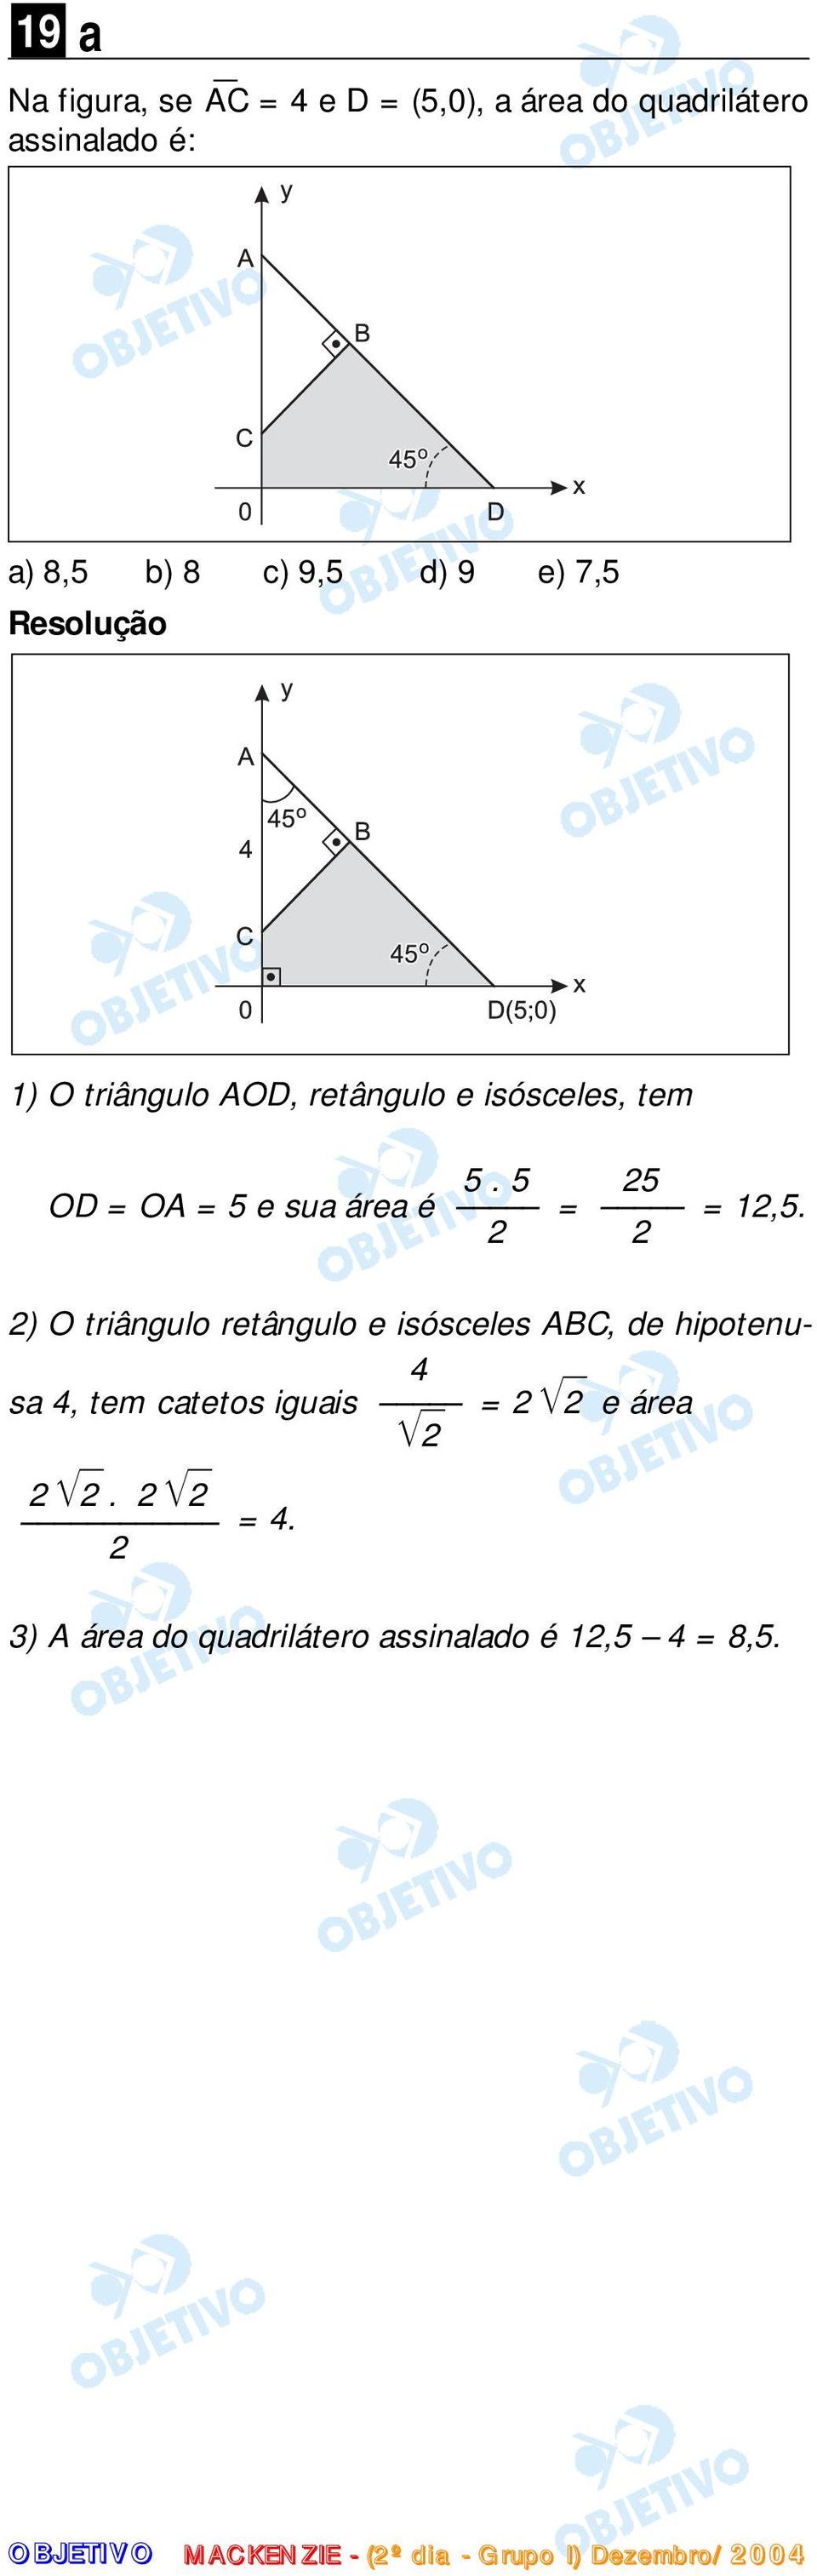 2 2 2) O triângulo retângulo e isósceles ABC, de hipotenusa 4, tem catetos iguais = 2 2 e área 4 2 2 2.